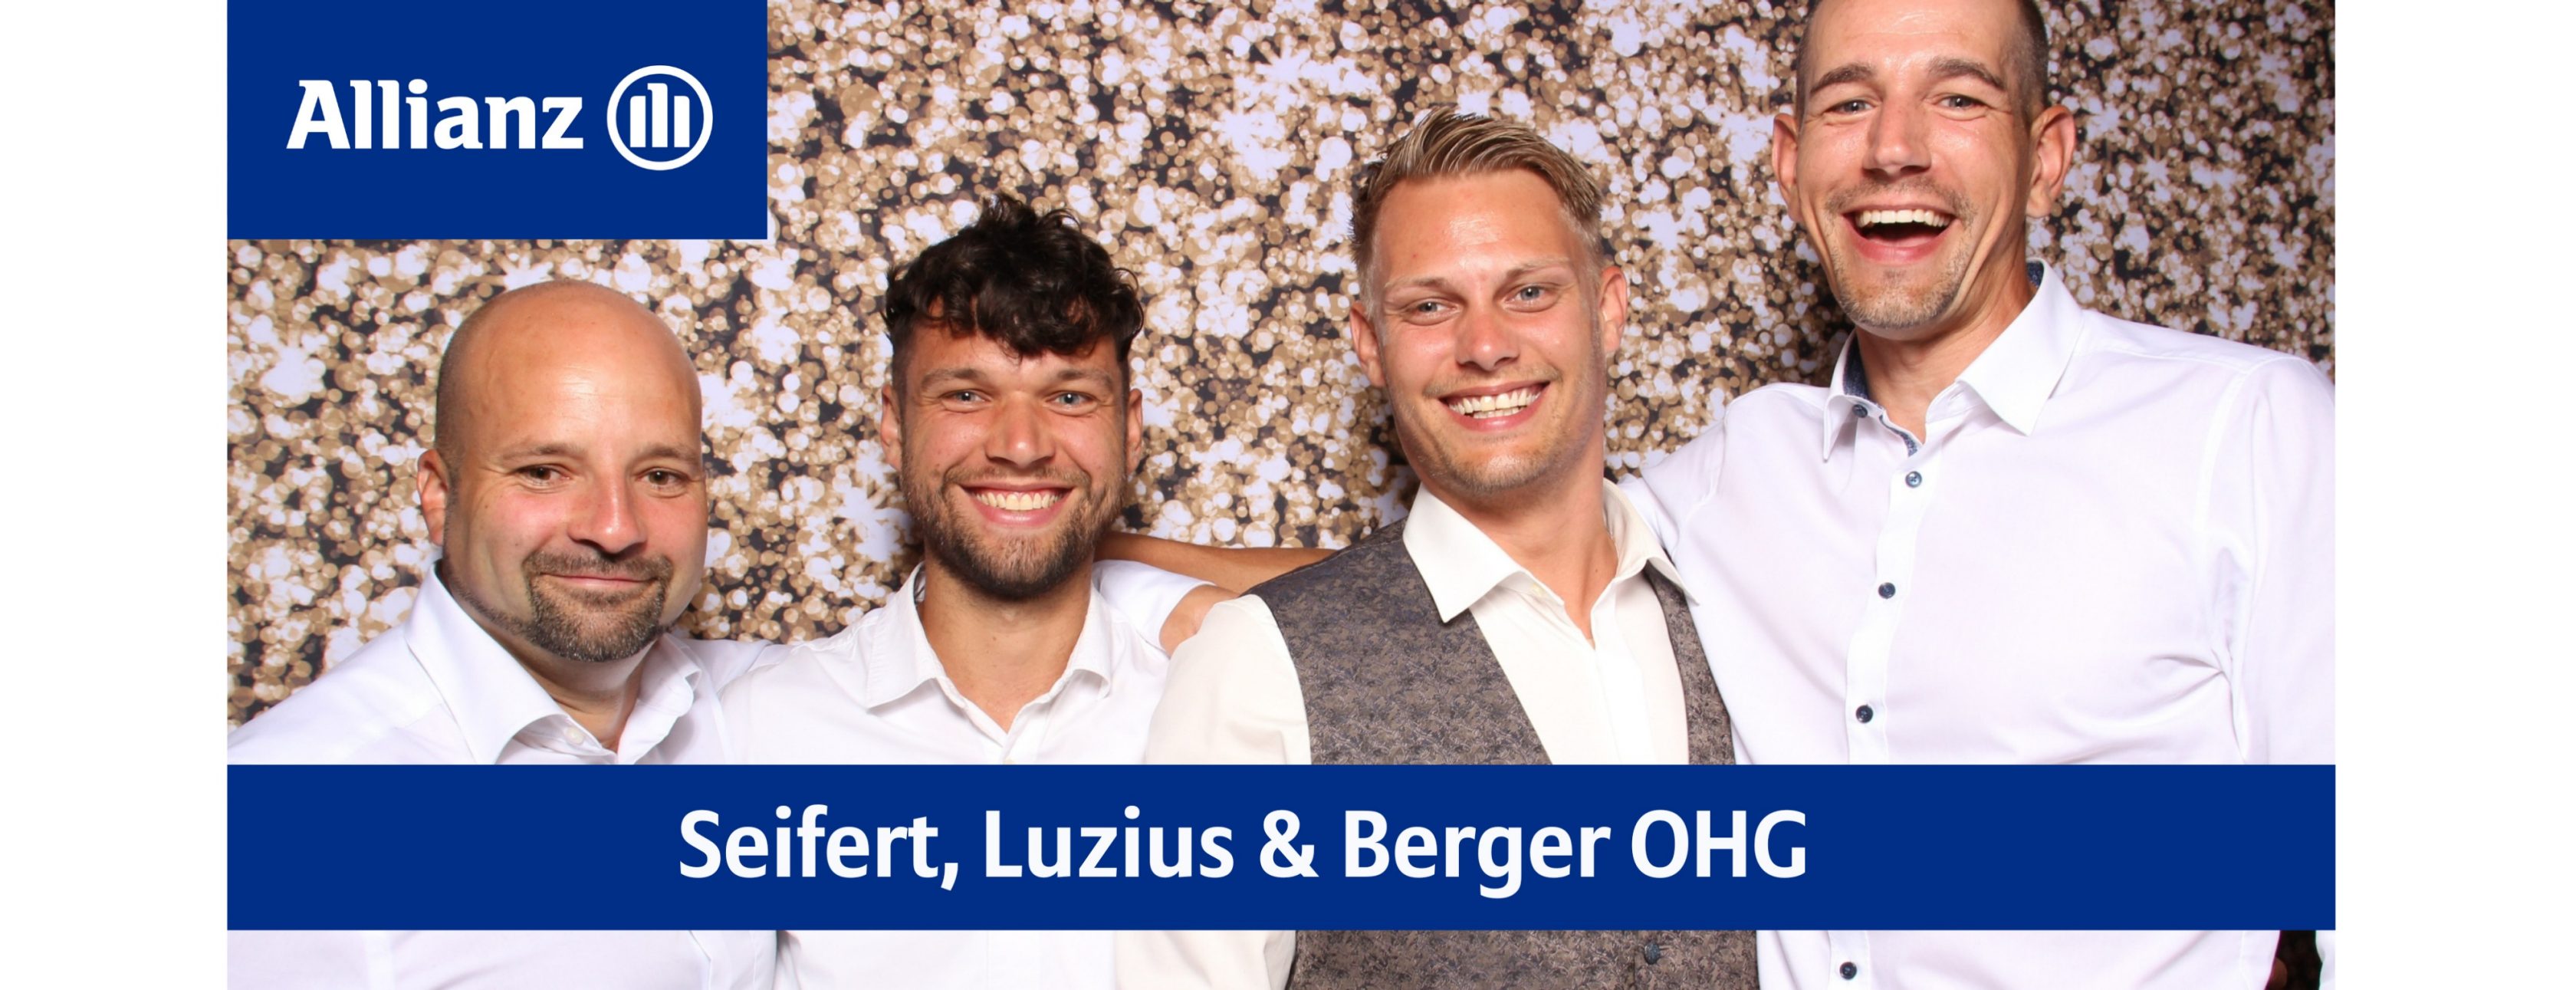 Allianz Versicherung Seifert,Luzius und Berger OHG Lütjenburg - Versicherung Fonds Baufinanzierung Elementar